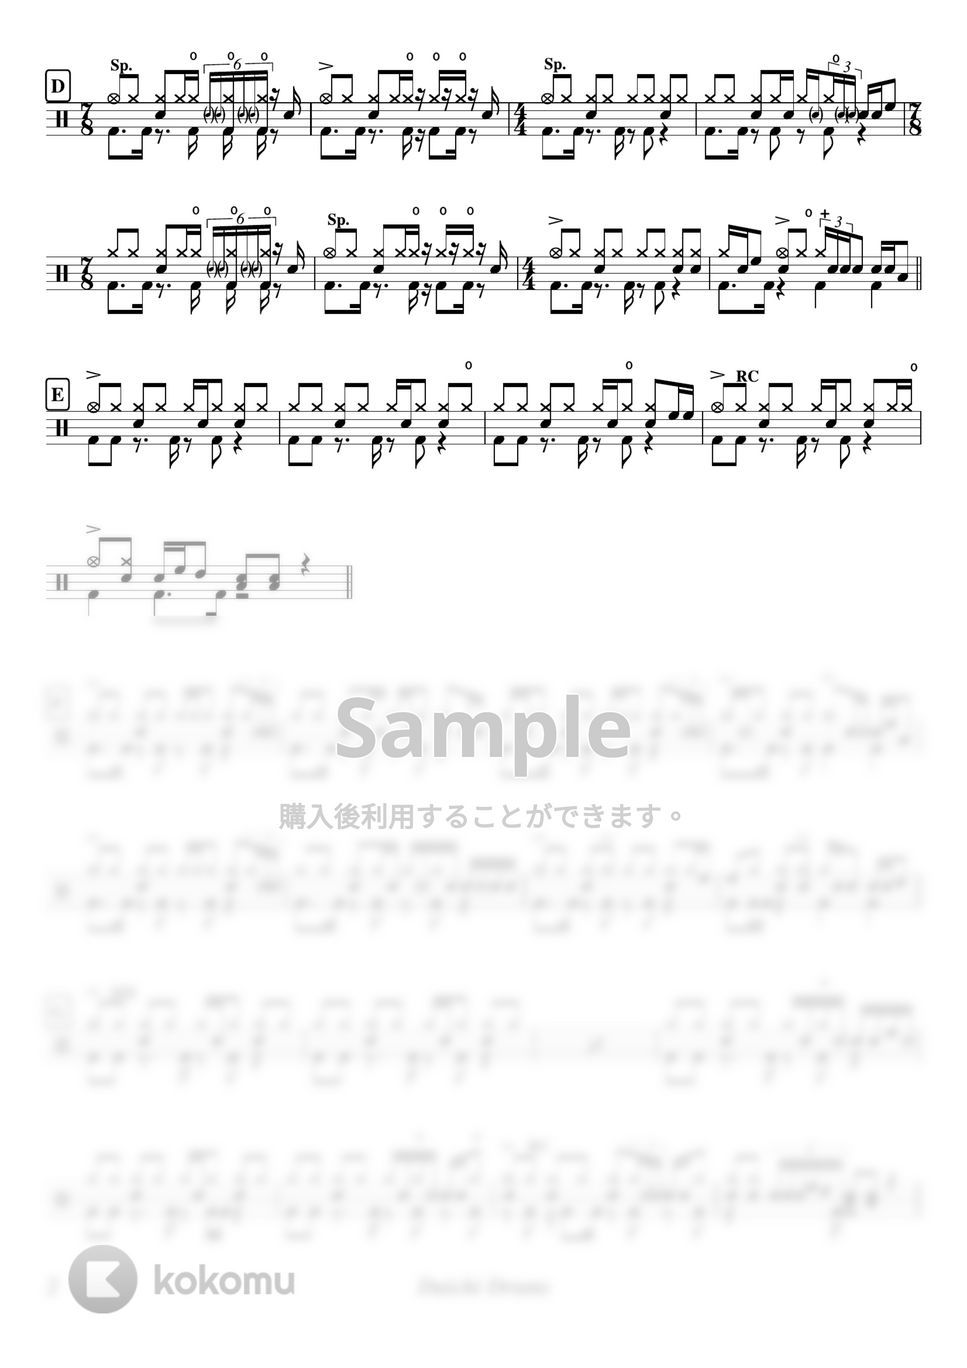 スピッツ - 美しい鰭 by Daichi Drums